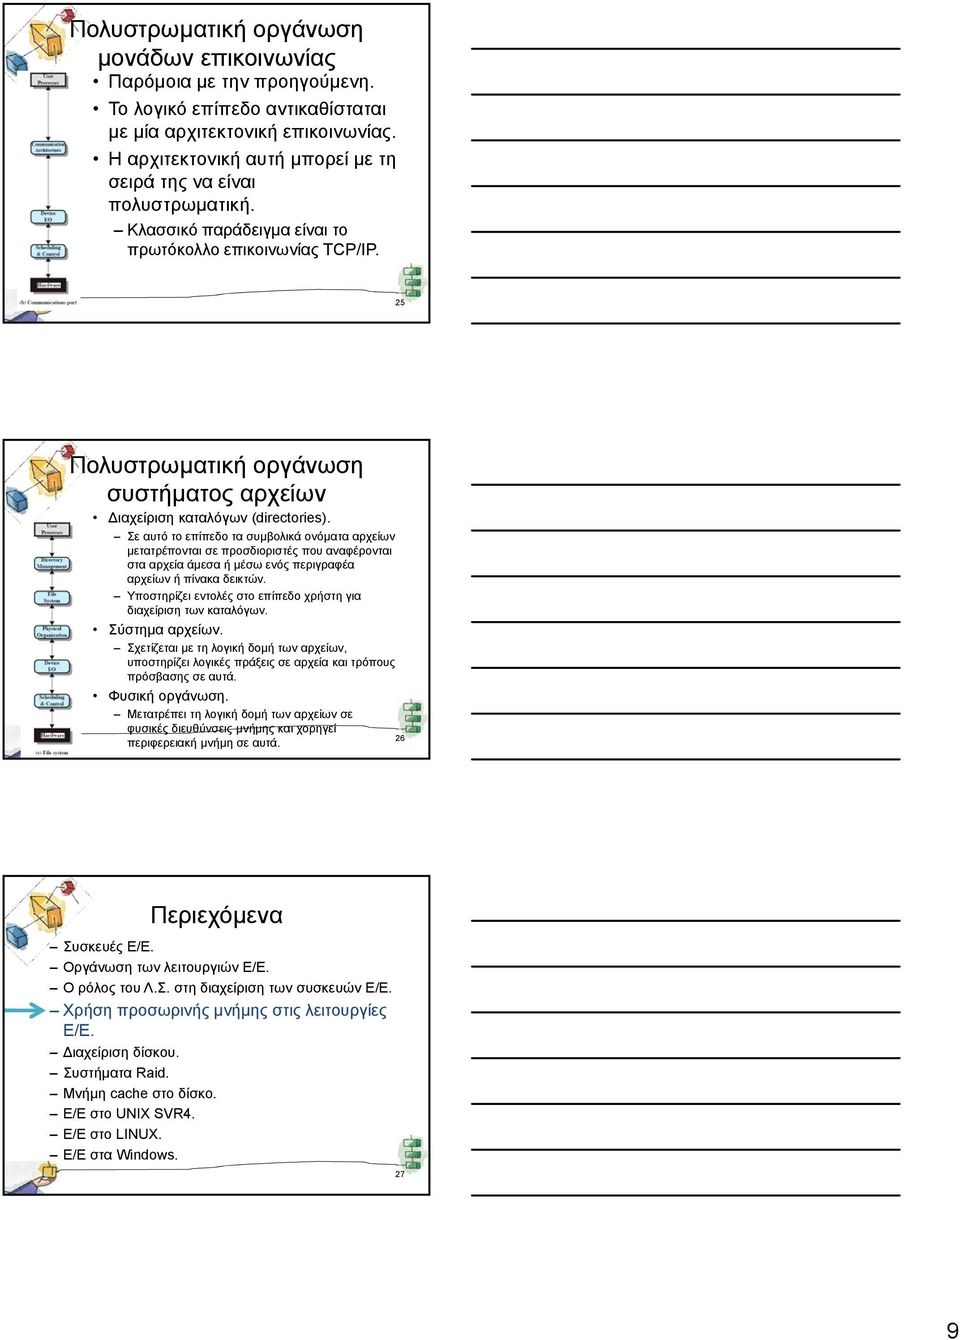 25 Πολυστρωματική οργάνωση συστήματος αρχείων Διαχείριση καταλόγων (directories).